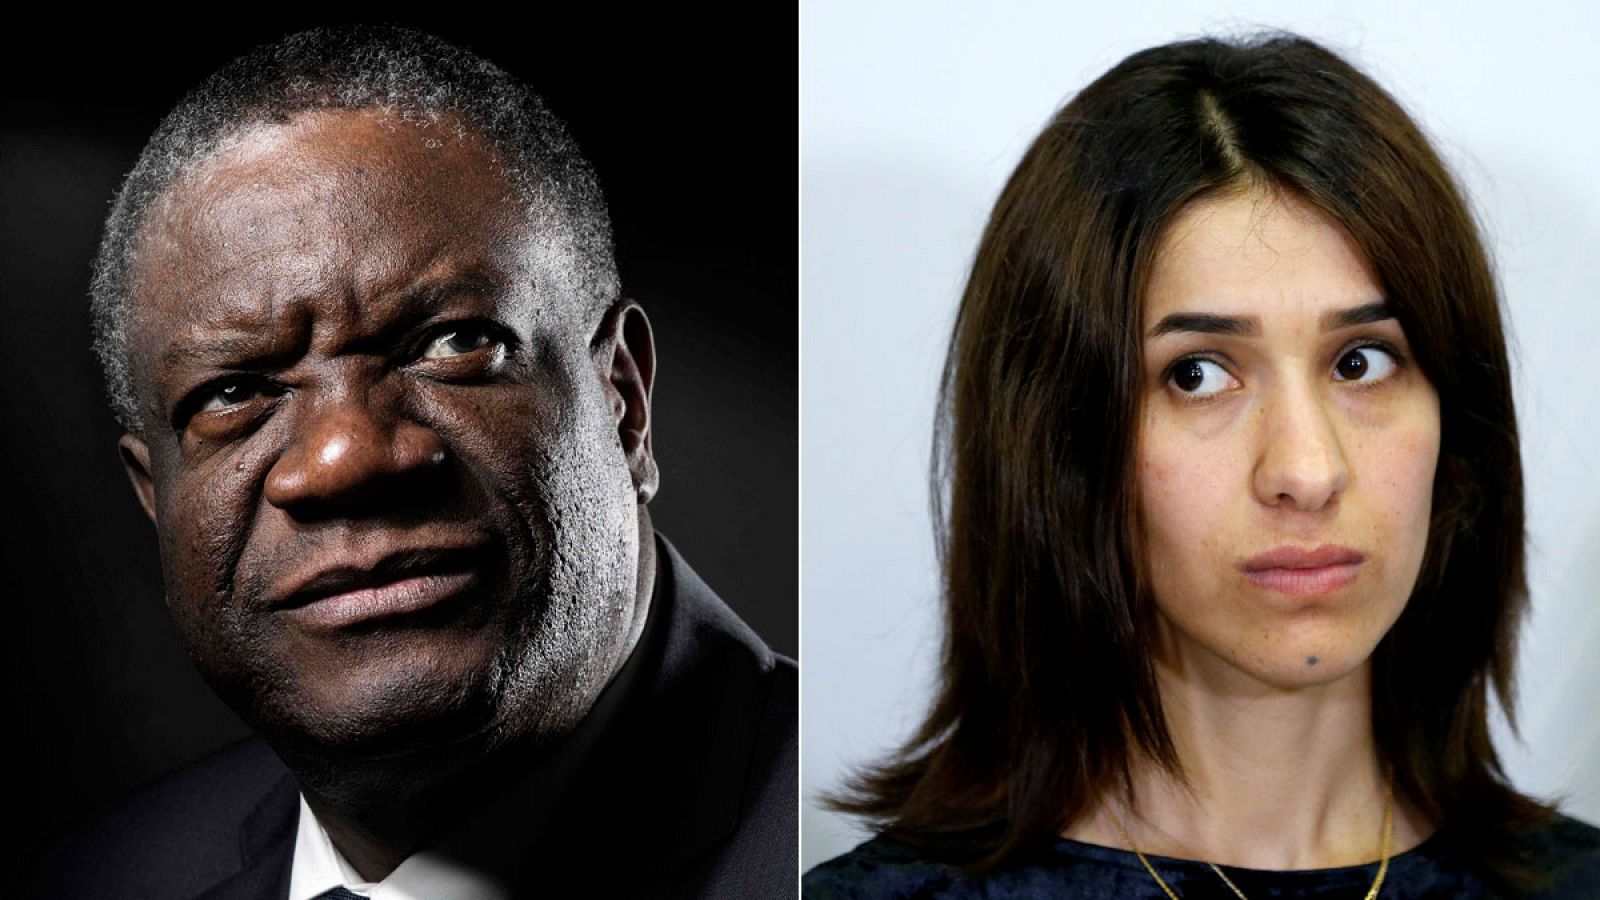 El doctor congoleño Denis Mukwege y la activista yazidí Nadia Murad han obtenido el Nobel de la Paz 2018 "por sus esfuerzos para terminar con el uso de la violencia sexual como arma de guerra y en conflictos armados", según ha informado el Comité Nob